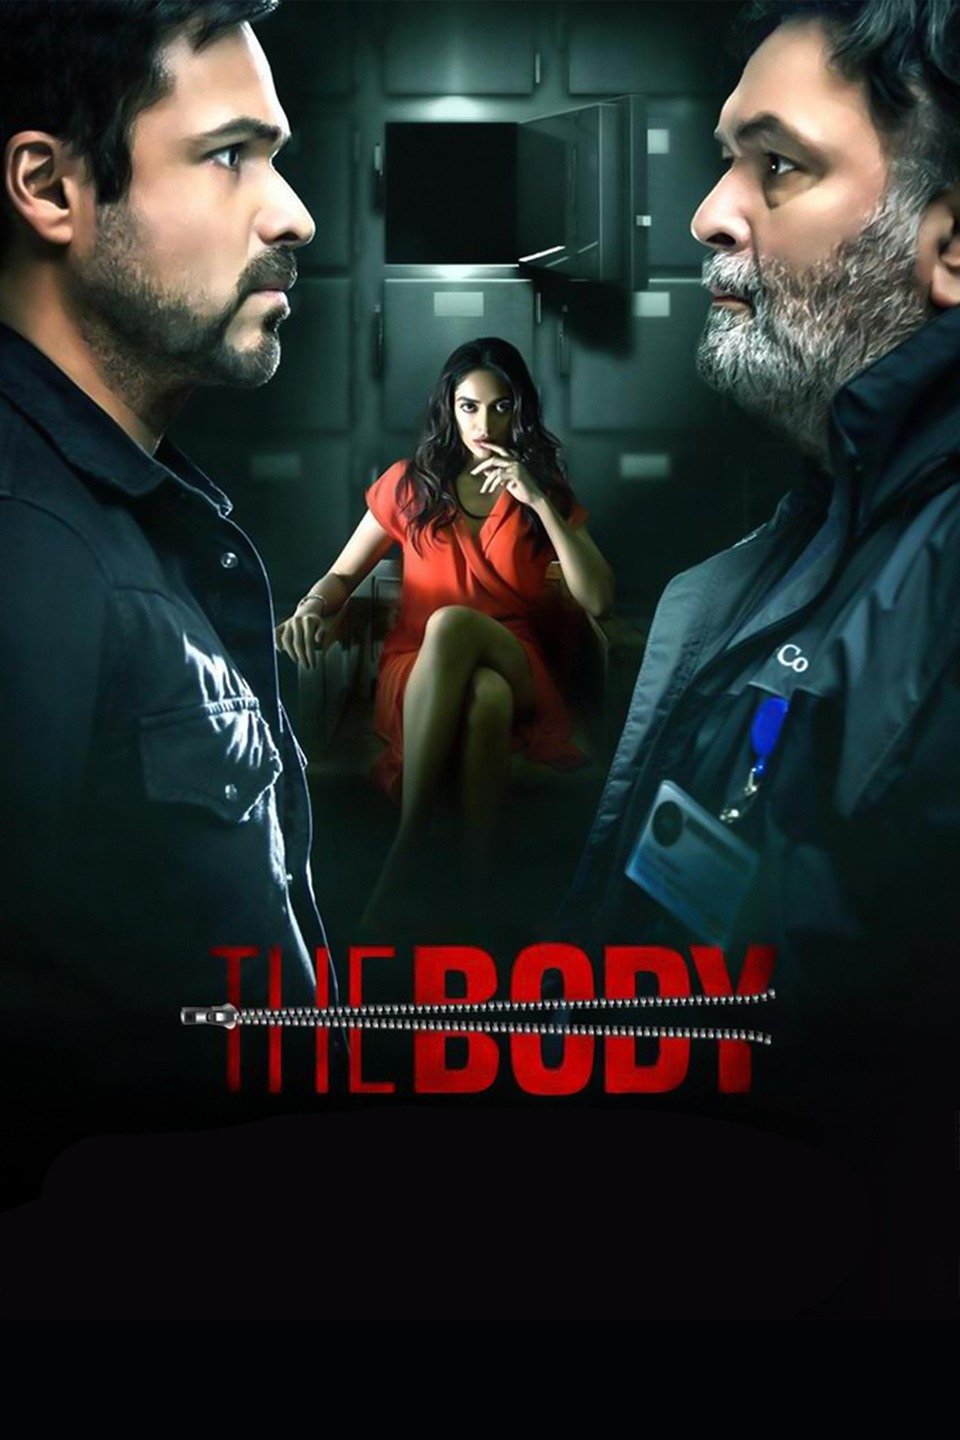 [อินเดีย] The Body (2019) ศพที่หายไป [1080p] [Netflix] [พากย์อินเดีย 5.1] [บรรยายไทย + อังกฤษ] [เสียงอินเดีย + ซับไทย] [PANDAFILE]